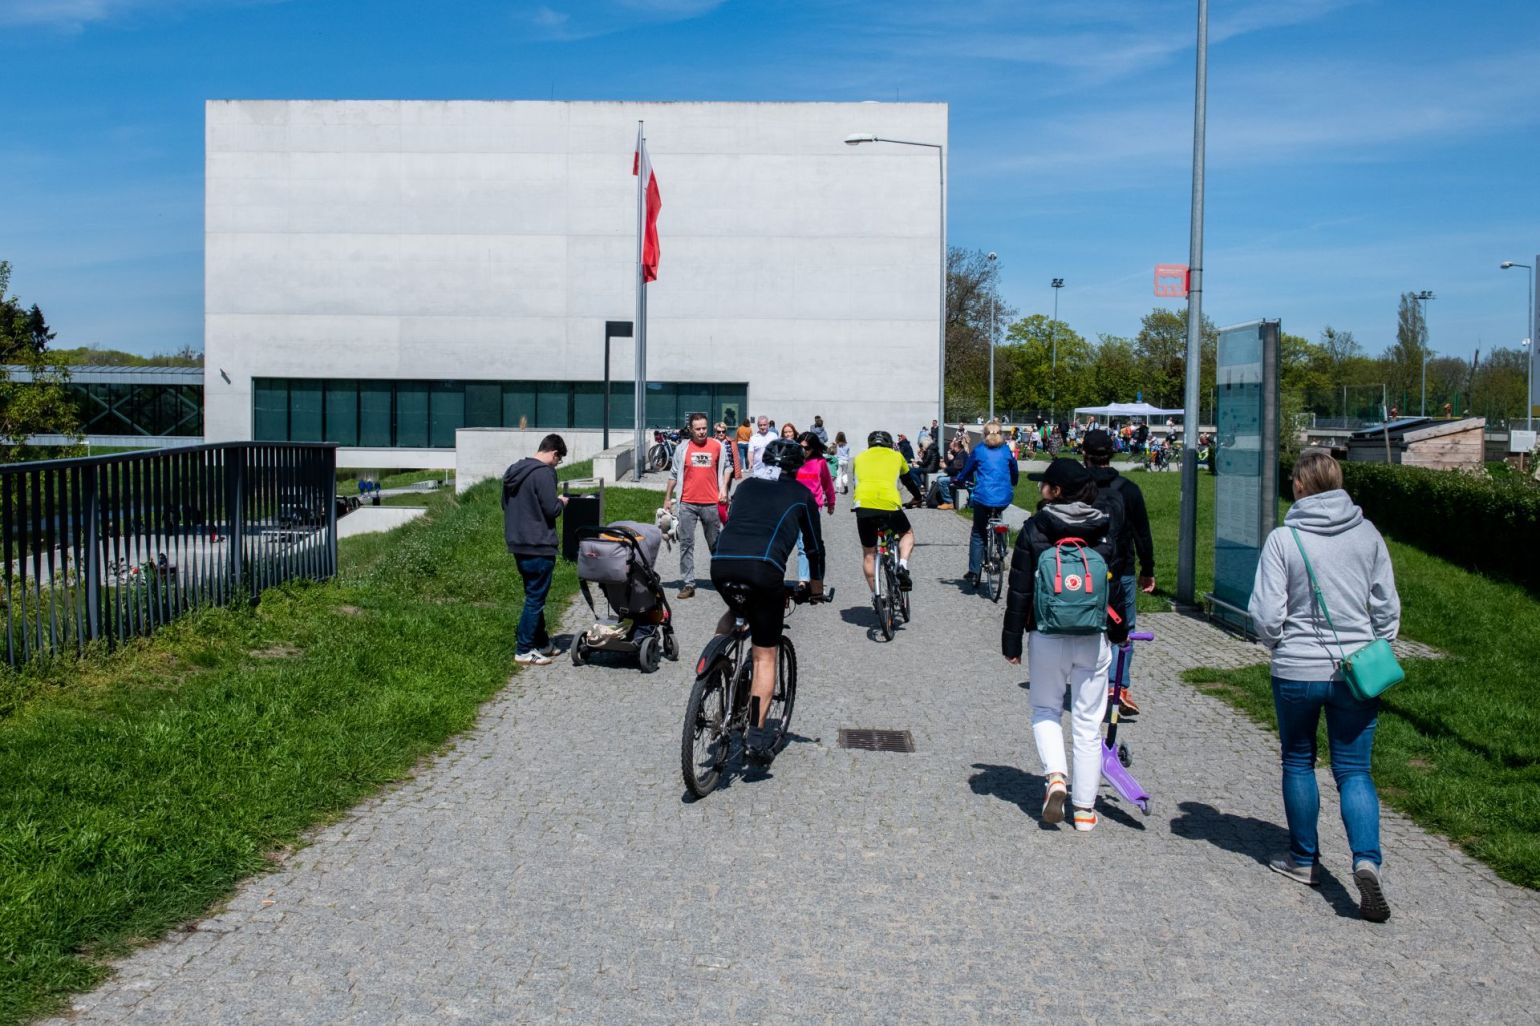 Rowerzyści, ojciec z dzieckiem w wózku i spacerowicze zmierzają w stronę Bramy Poznania - grafika artykułu